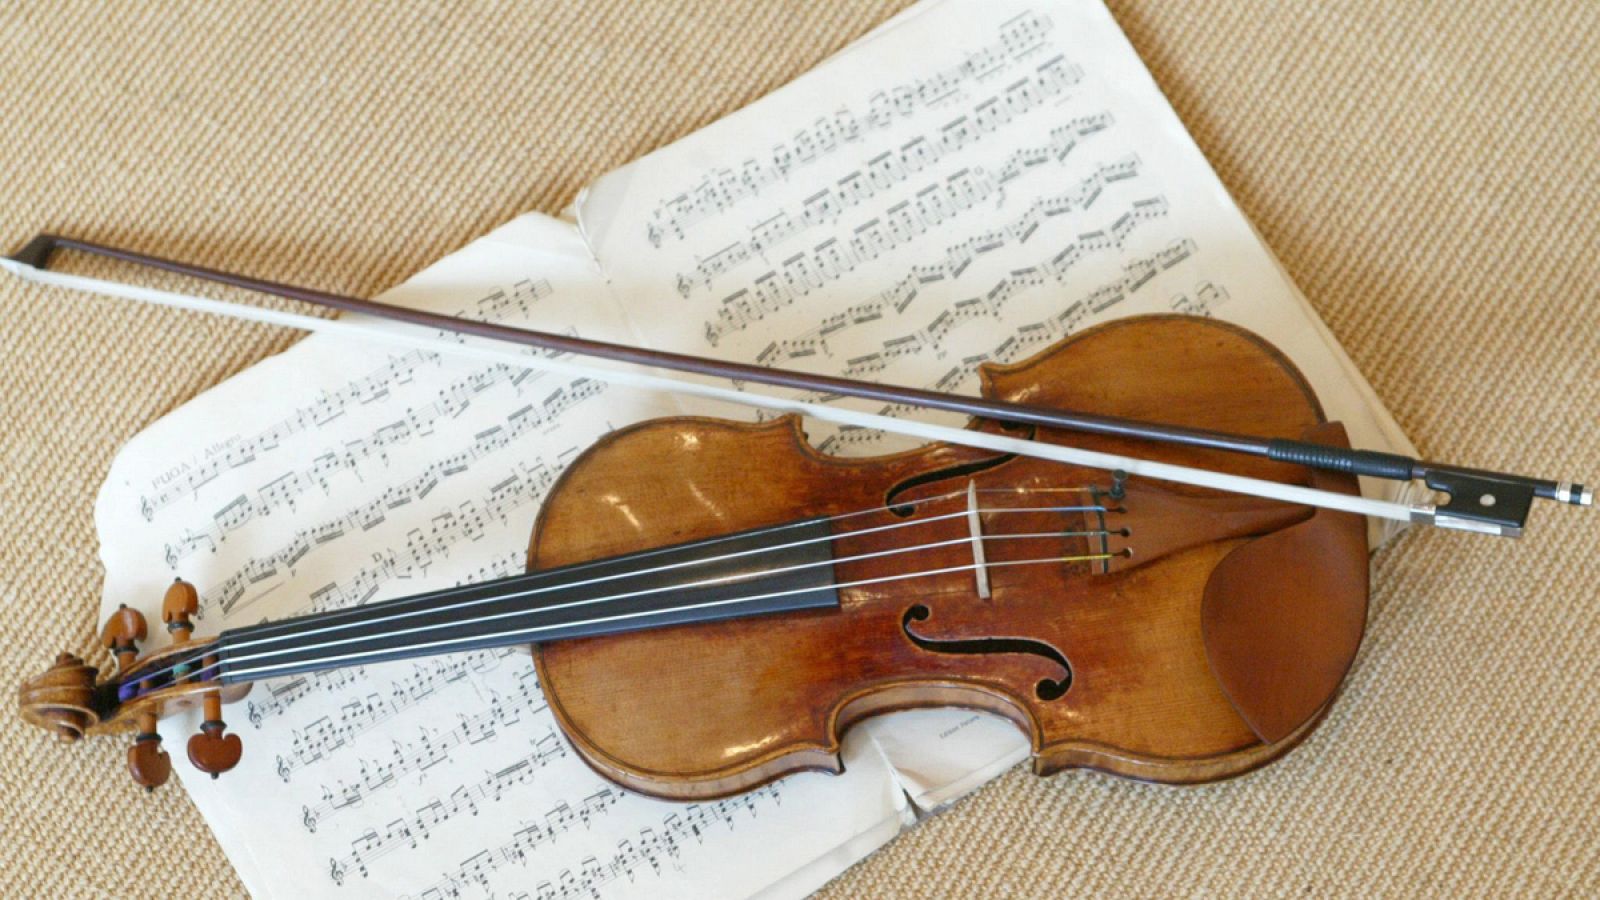 Los famosos violines "Stradivarius" fueron manufacturados por el luthier italiano Antonio Stradivari (1644-1737).